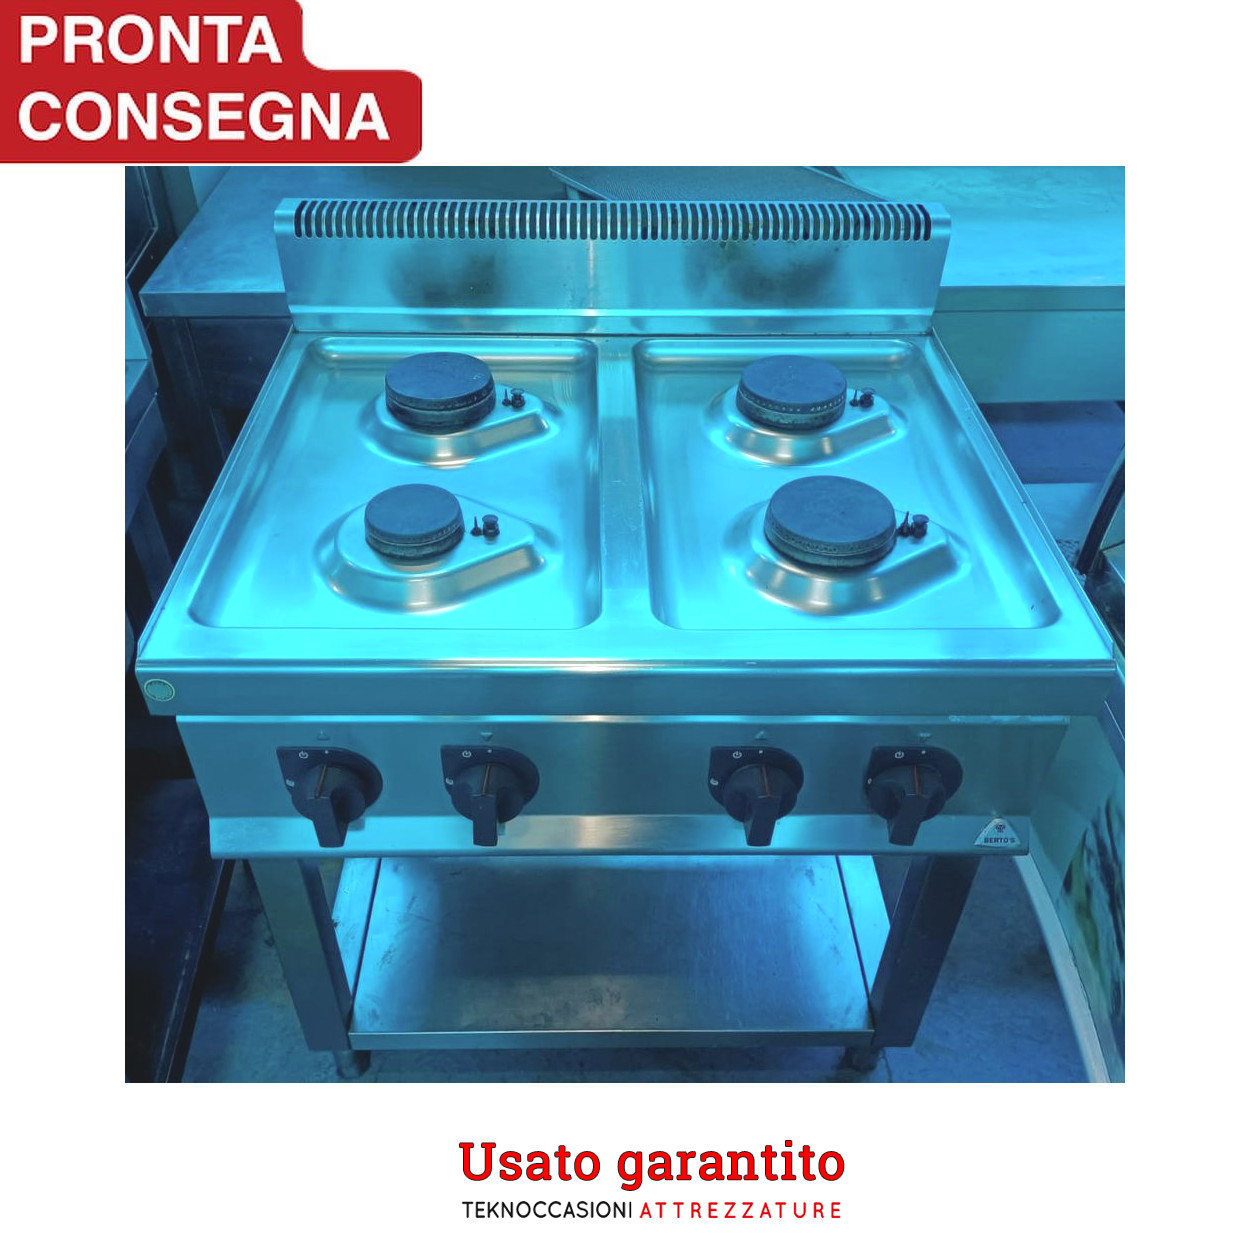 Cucina a gas professionale 4 Berto's usato garantito in vendita - foto 1